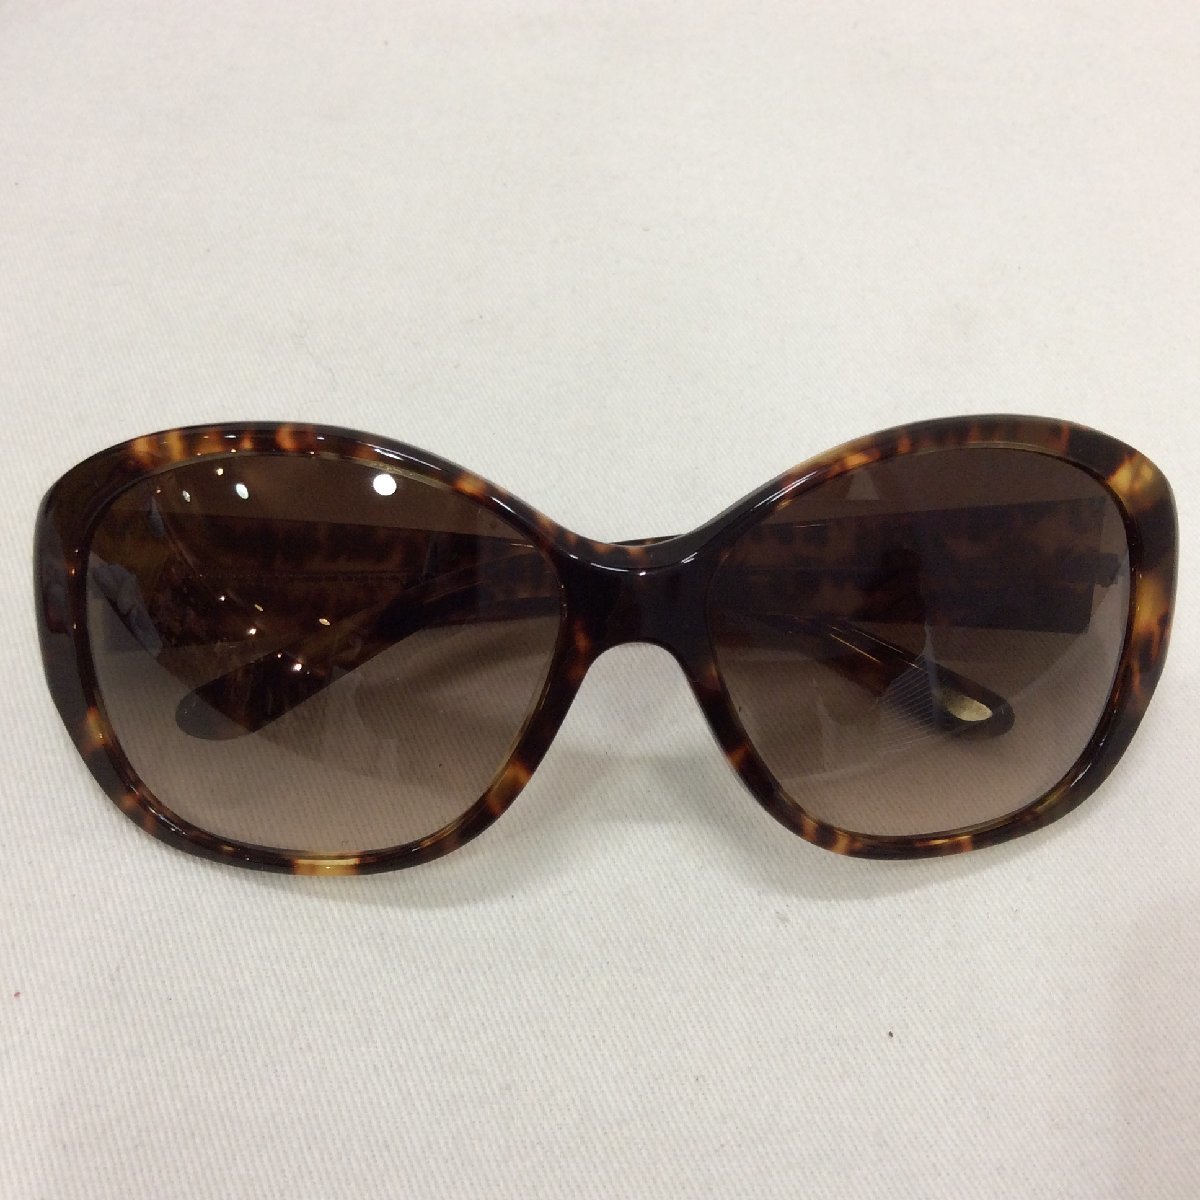 [ price cut ]RALPH LAUREN Ralph Lauren sunglasses case & box attaching 